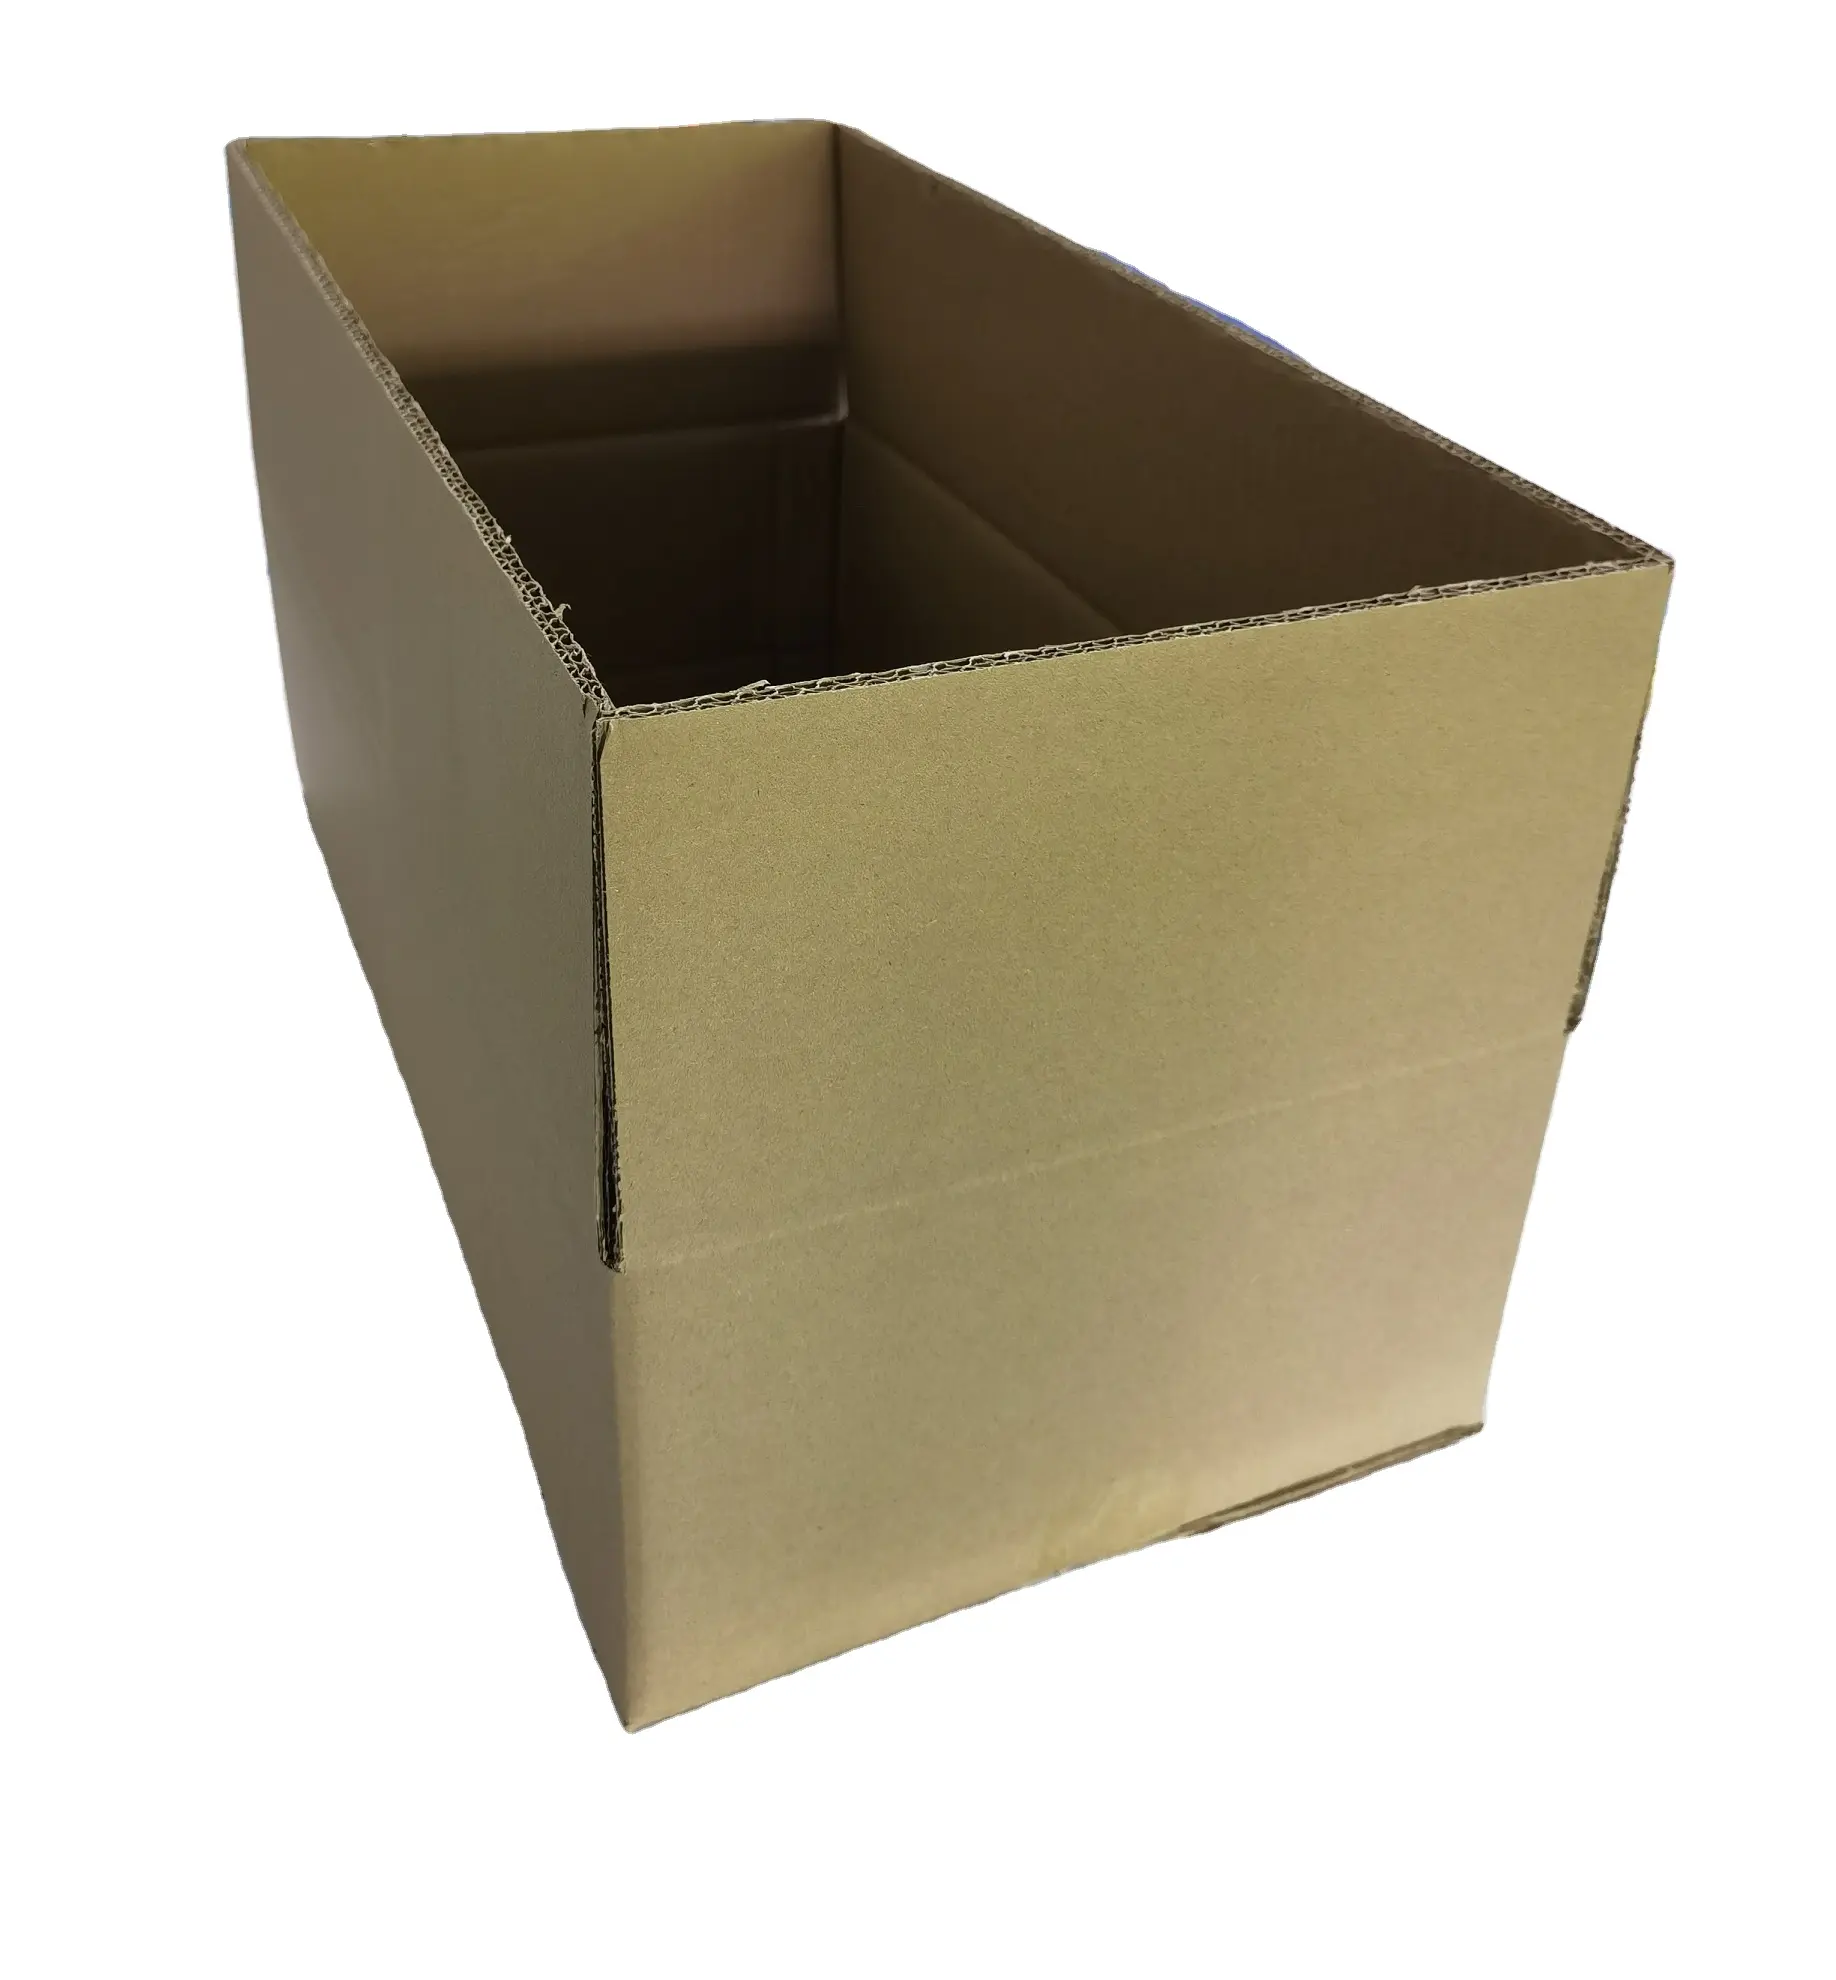 नालीदार शिपिंग कार्टन बॉक्स हेवी ड्यूटी कस्टम नालीदार शिपिंग कार्टन आरएससी शिपिंग बॉक्स मजबूत डबल वॉल